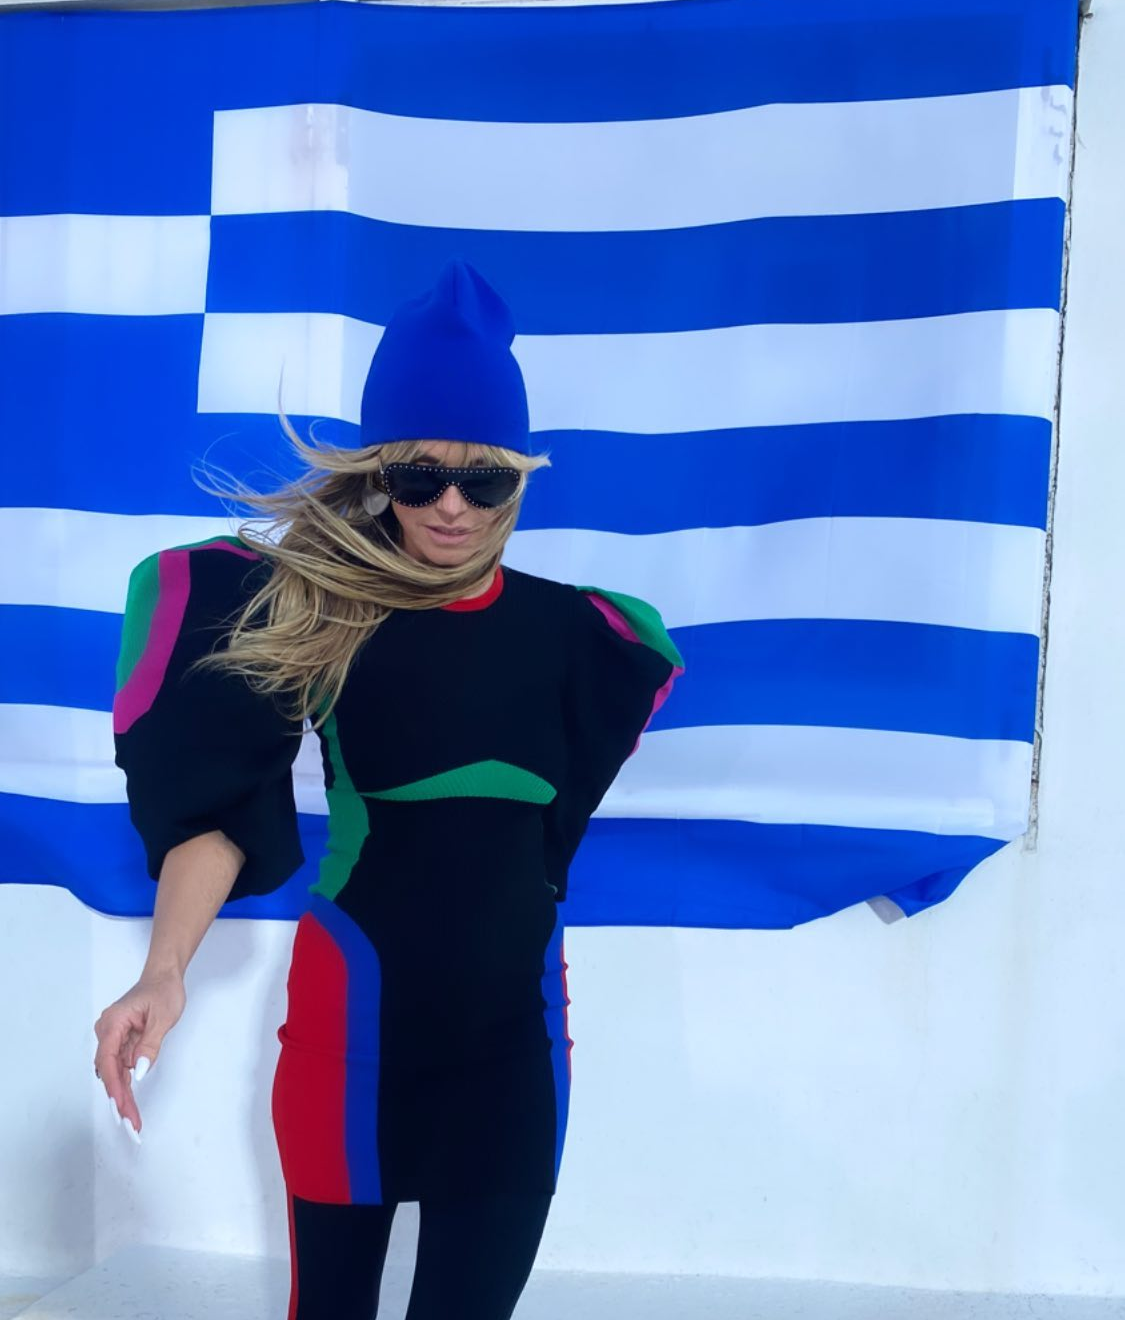 Heidi Klum: Η πασαρέλα της στο Ζάππειο με την Kylie Minogue και η πόζα με την ελληνική σημαία